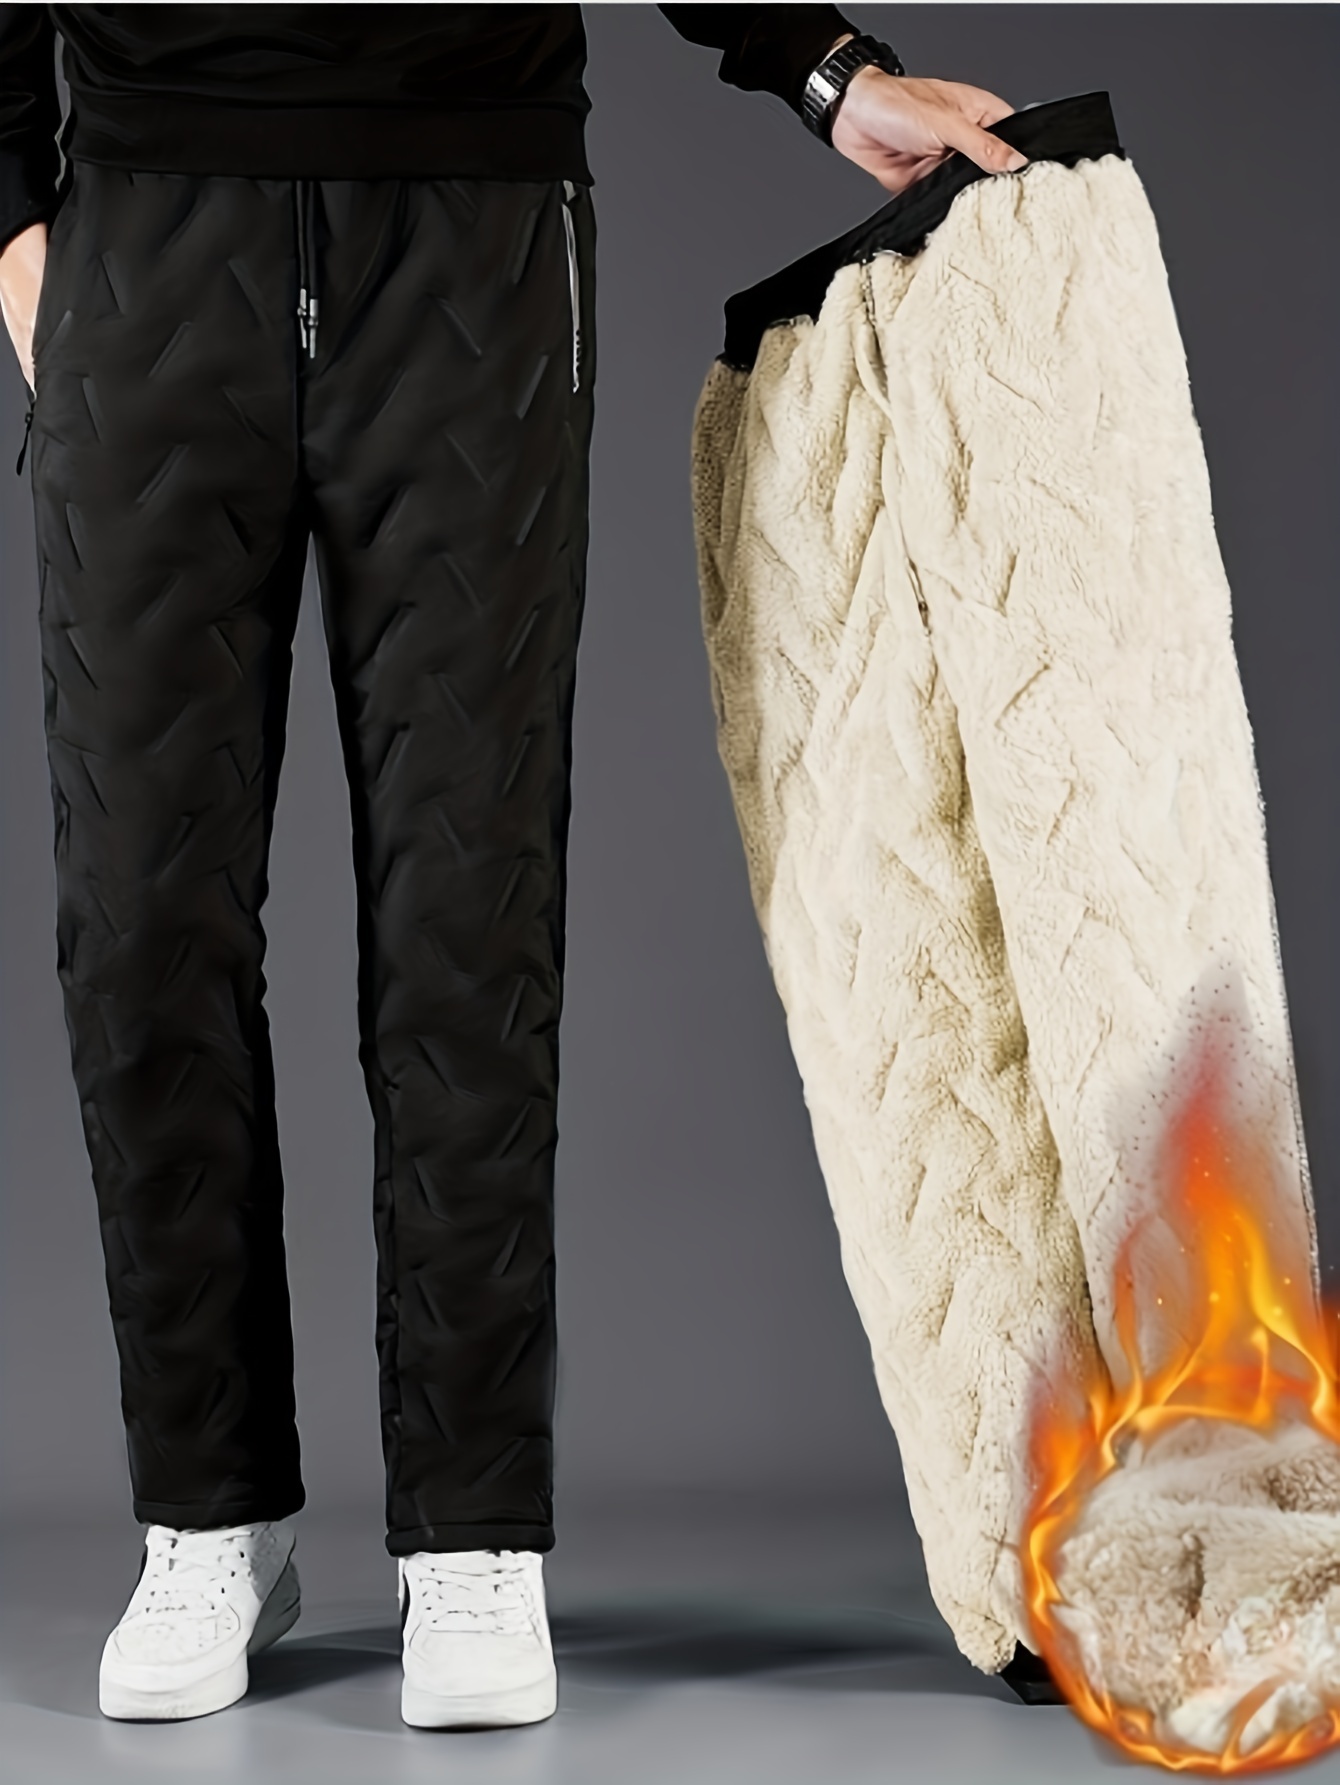 Pantalones térmicos informales a prueba de frío para mujer, ropa de invierno  para el hogar - AliExpress